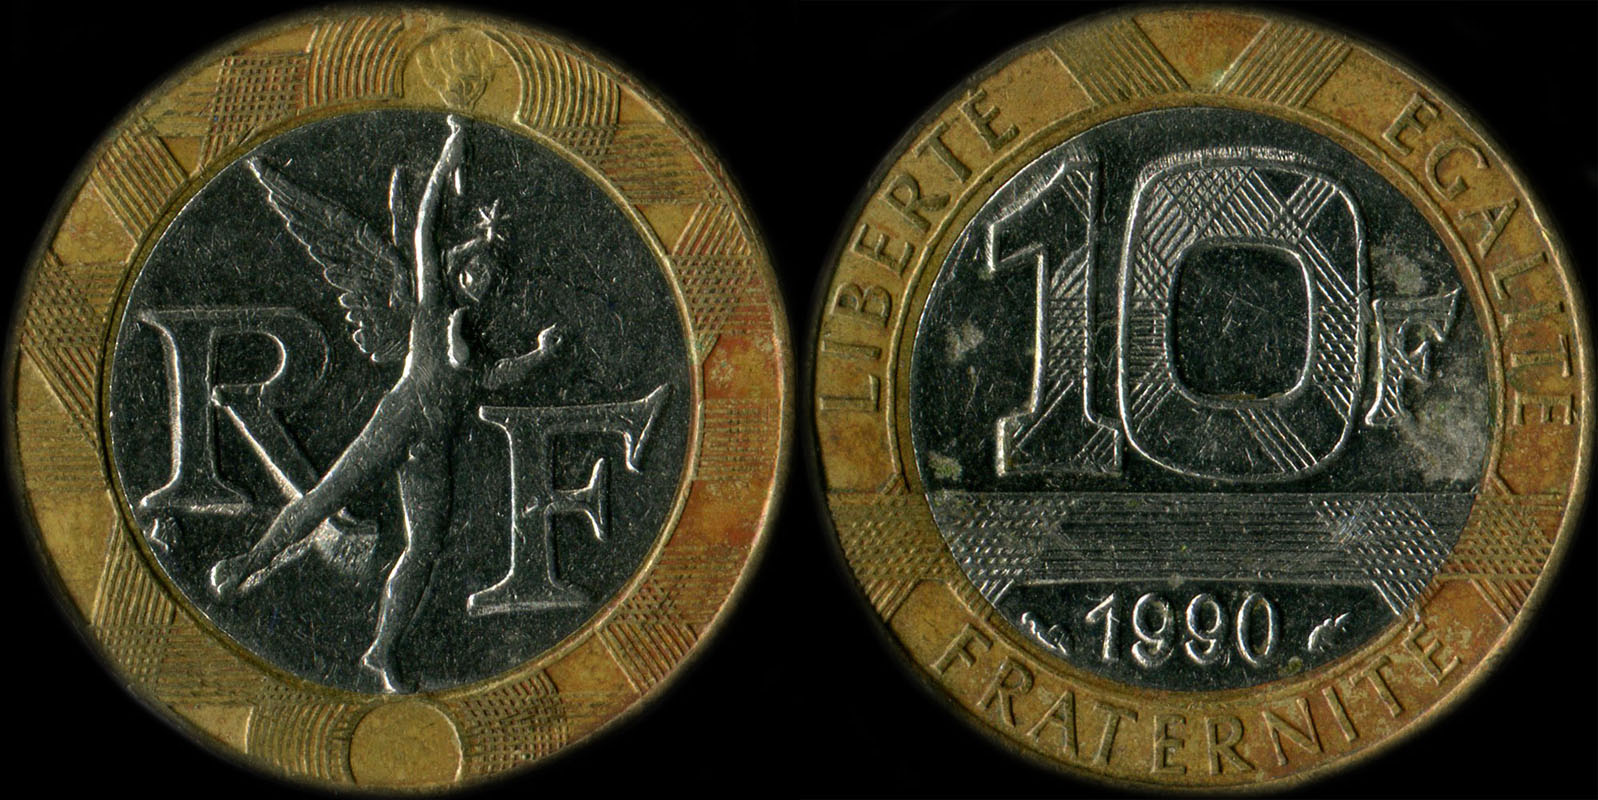 Pice de 10 francs Gnie 1992 avec point sur le buste